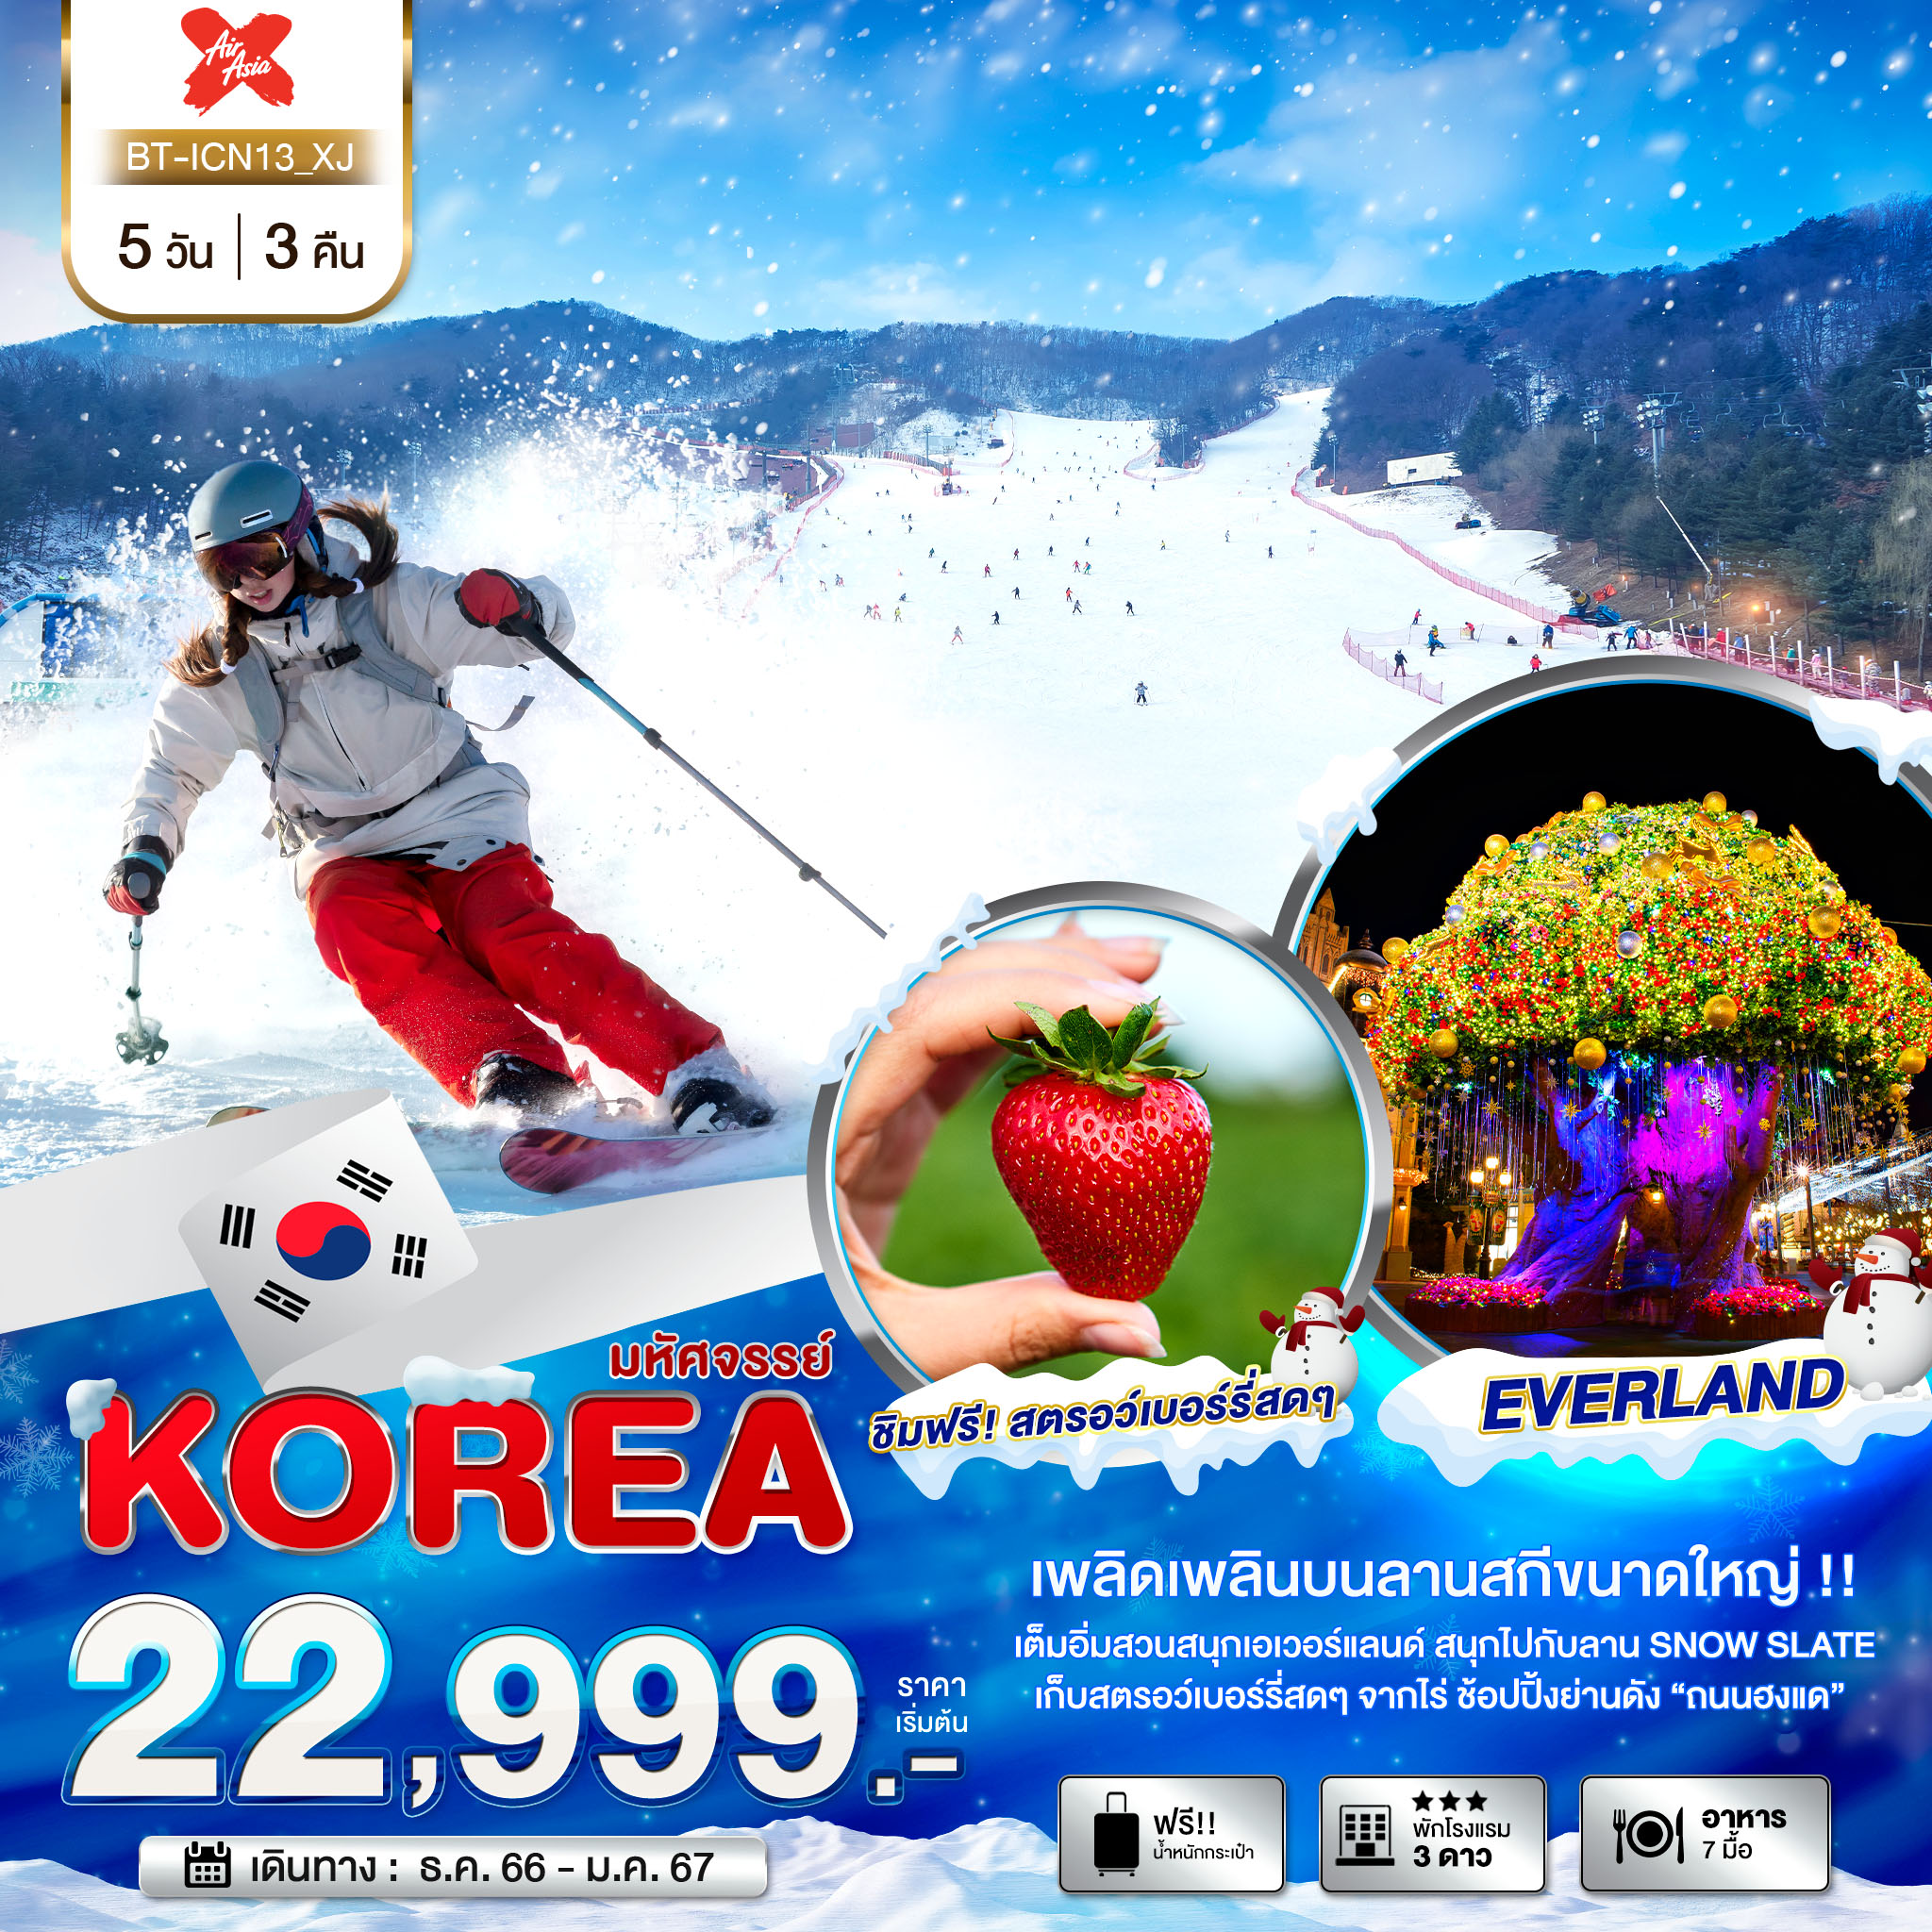 ทัวร์เกาหลี KOREA SNOW WINTER 5 วัน 3 คืน  (XJ) ธ.ค.66 - ม.ค.67